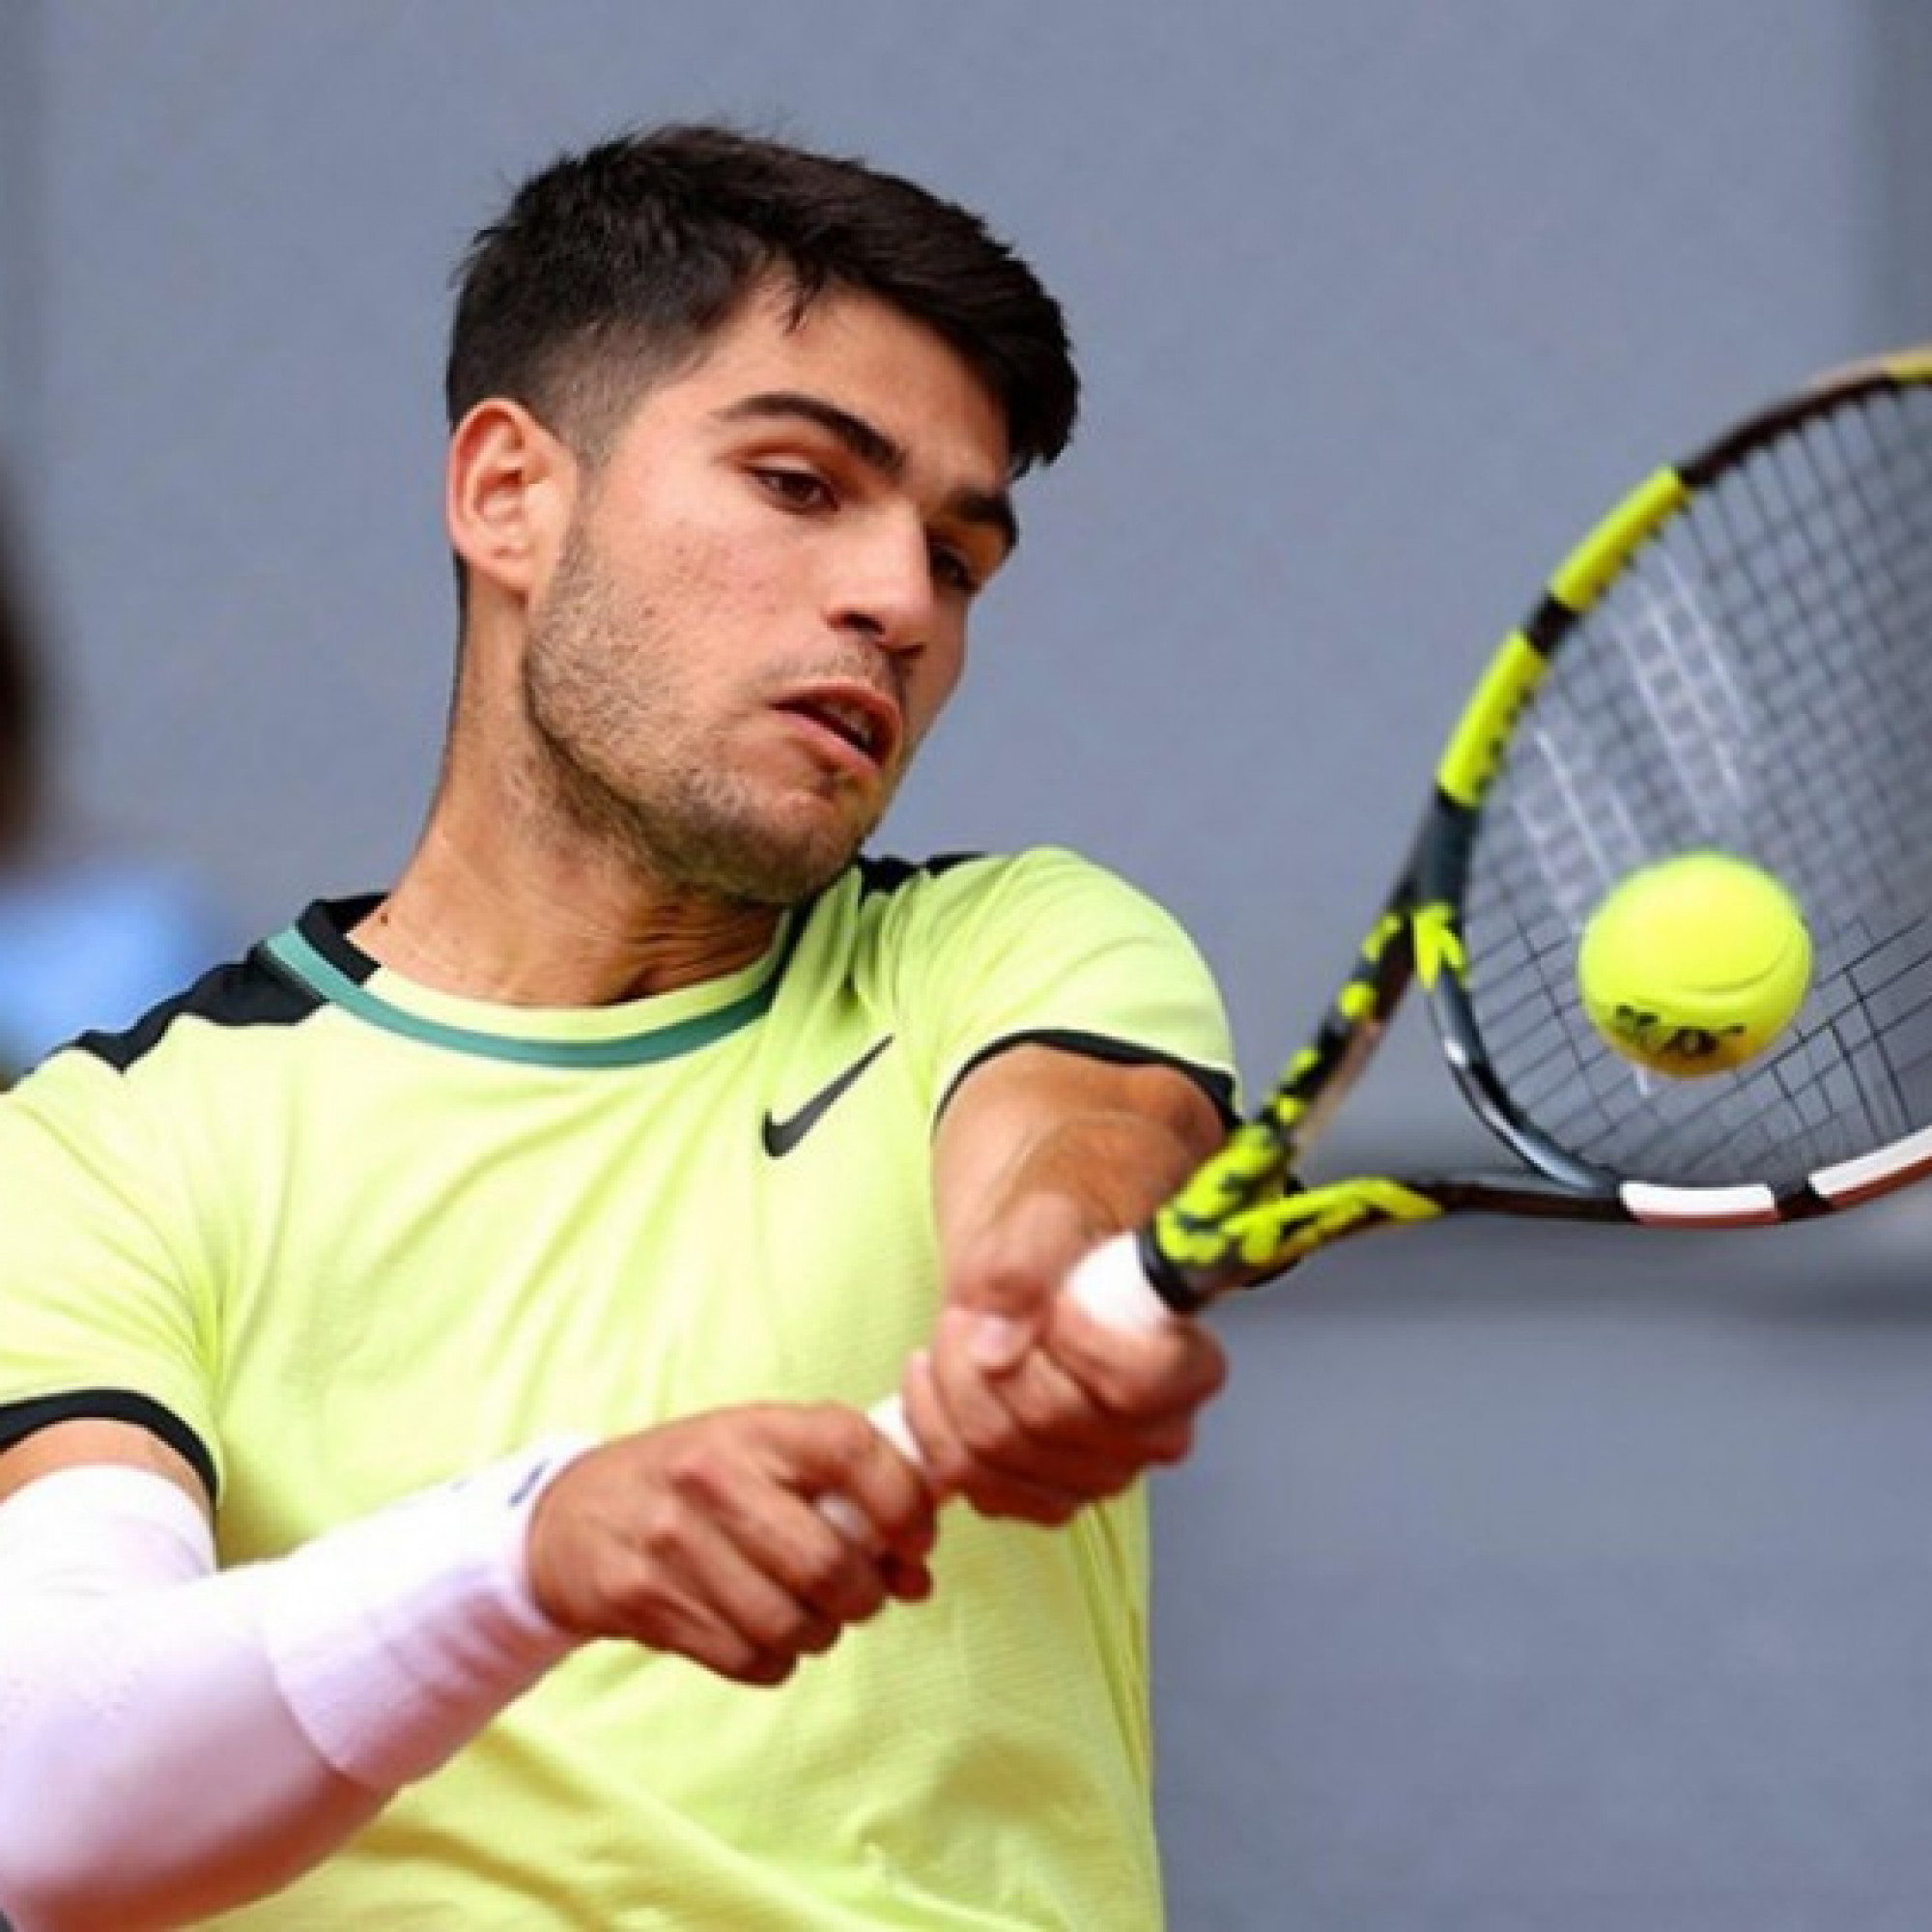  - Video tennis Seyboth Wild - Alcaraz: Đánh nhanh thắng nhanh, thị uy sức mạnh (Madrid Open)